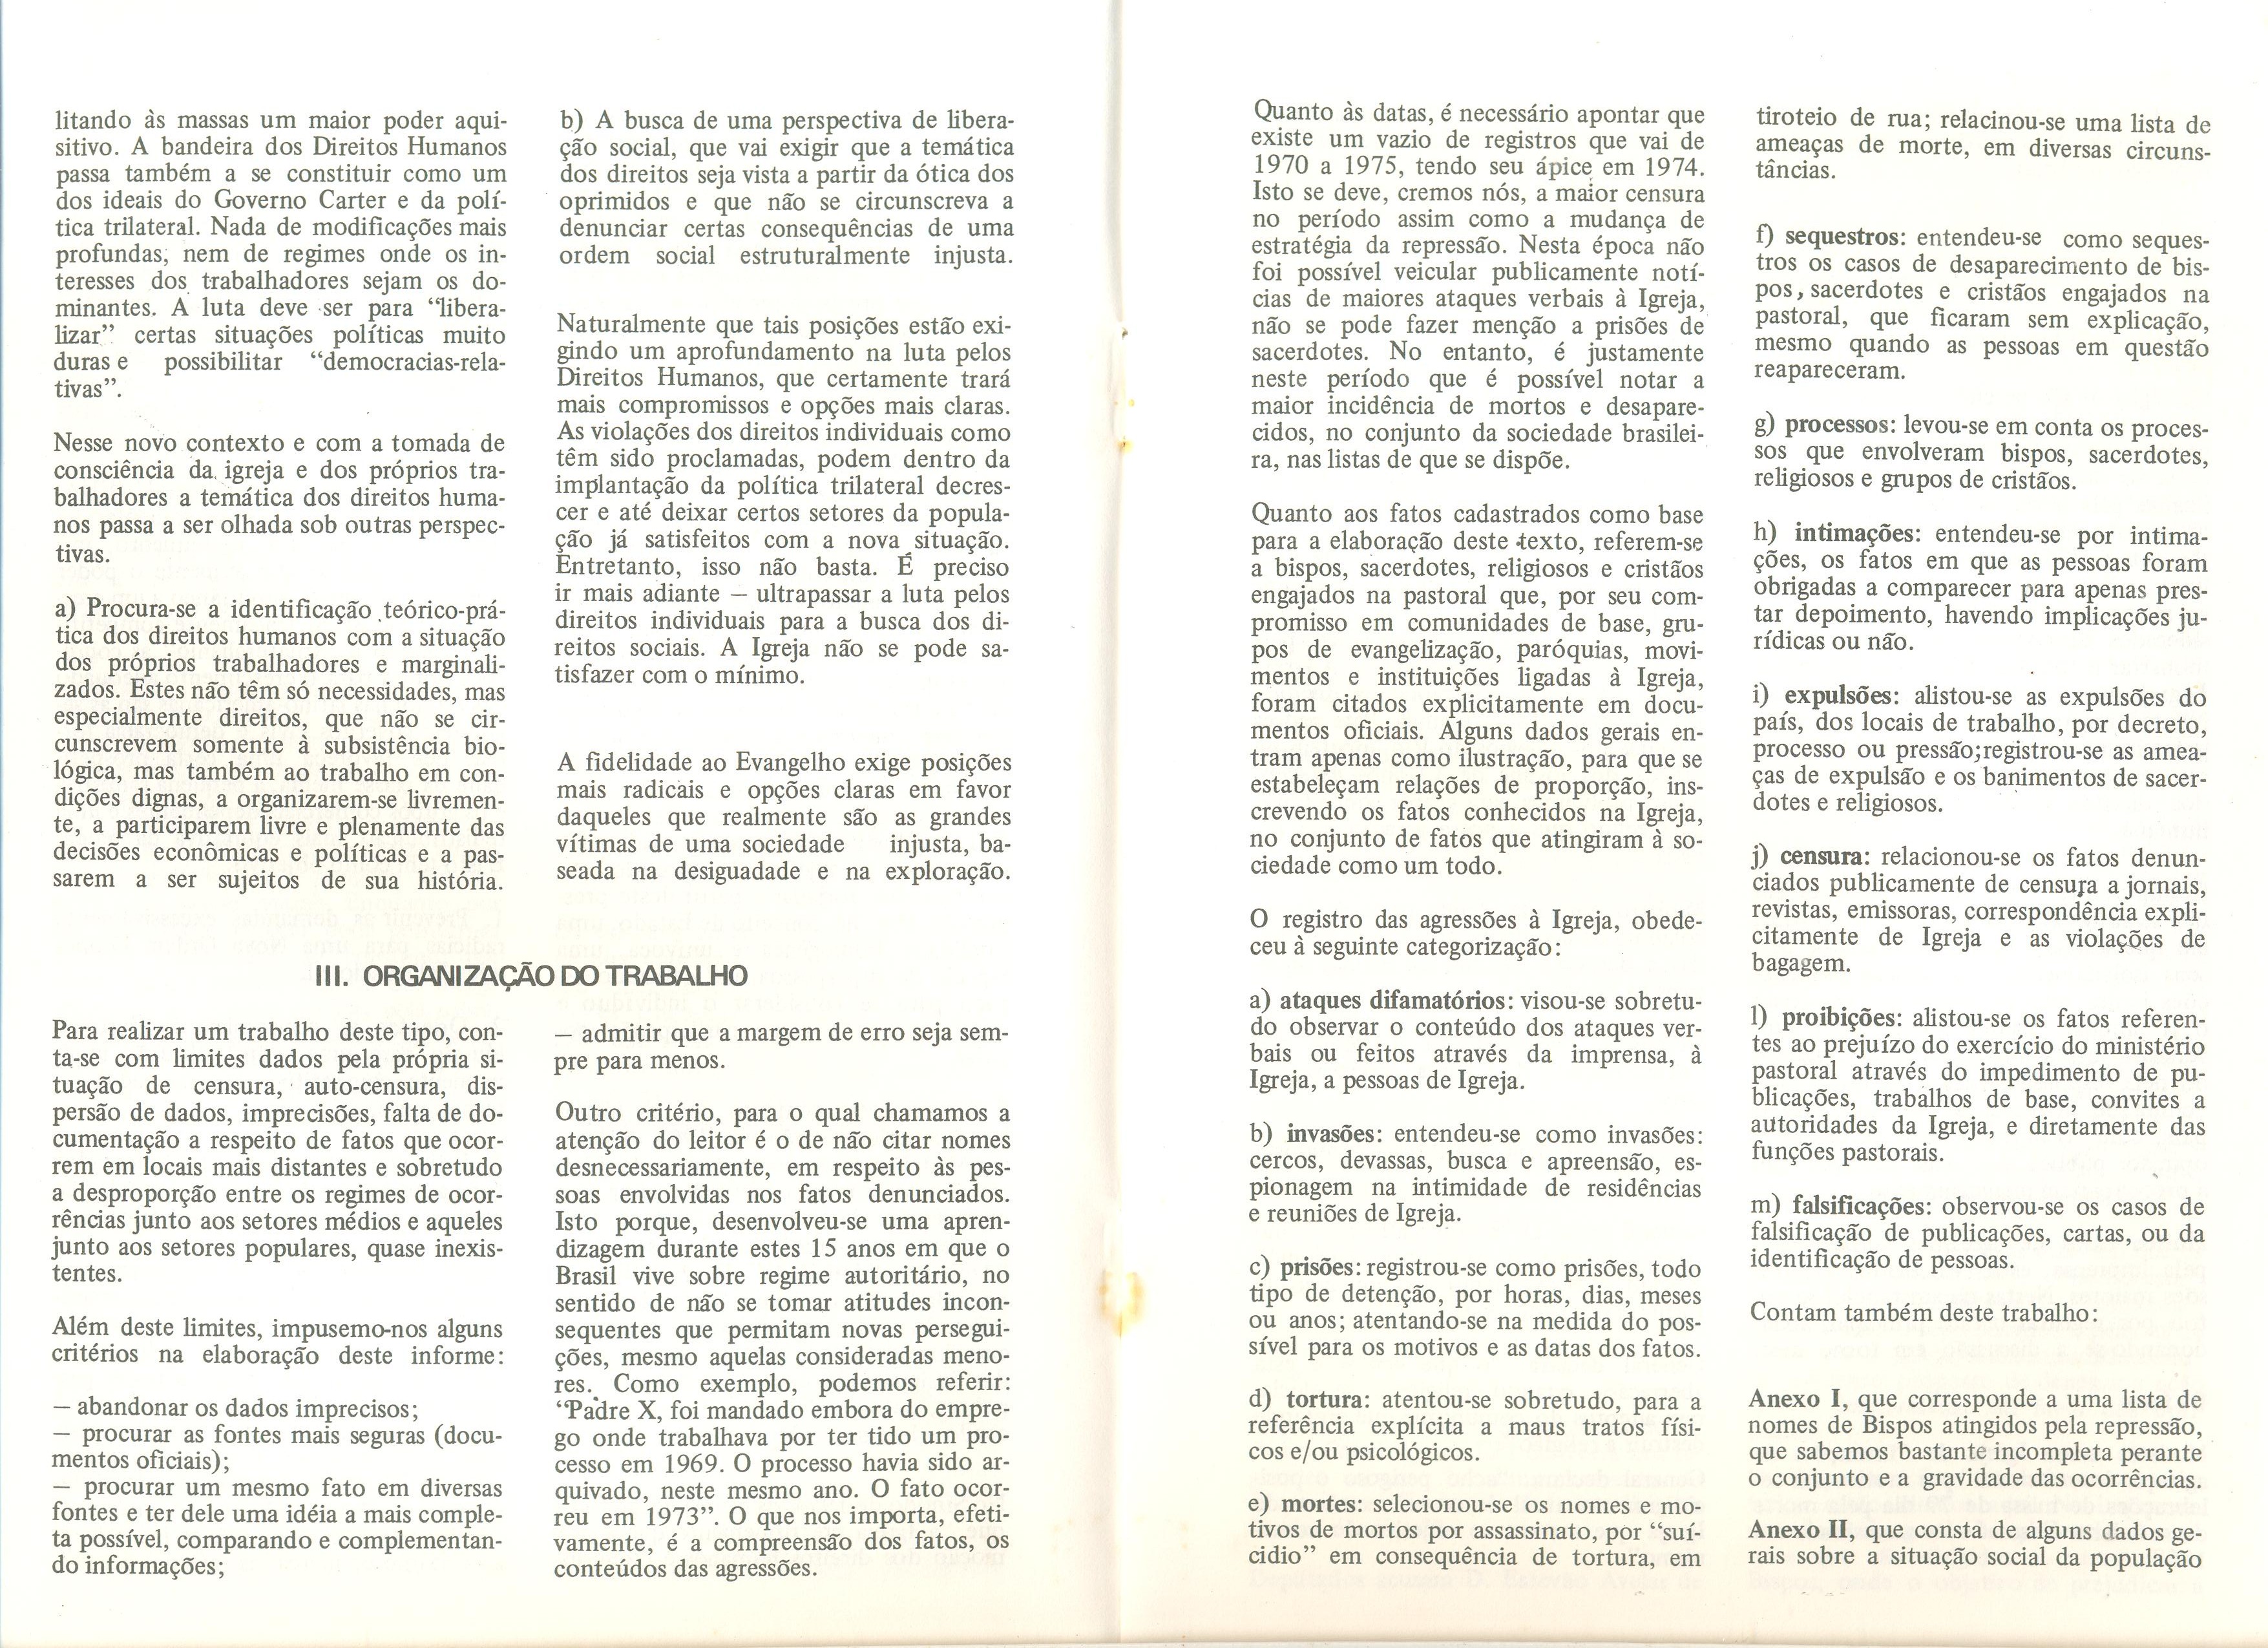 Repressão na Igreja no Brasil: reflexo de uma situação de opressão (1968/1978) (dez. 1978. (arquivo 3))